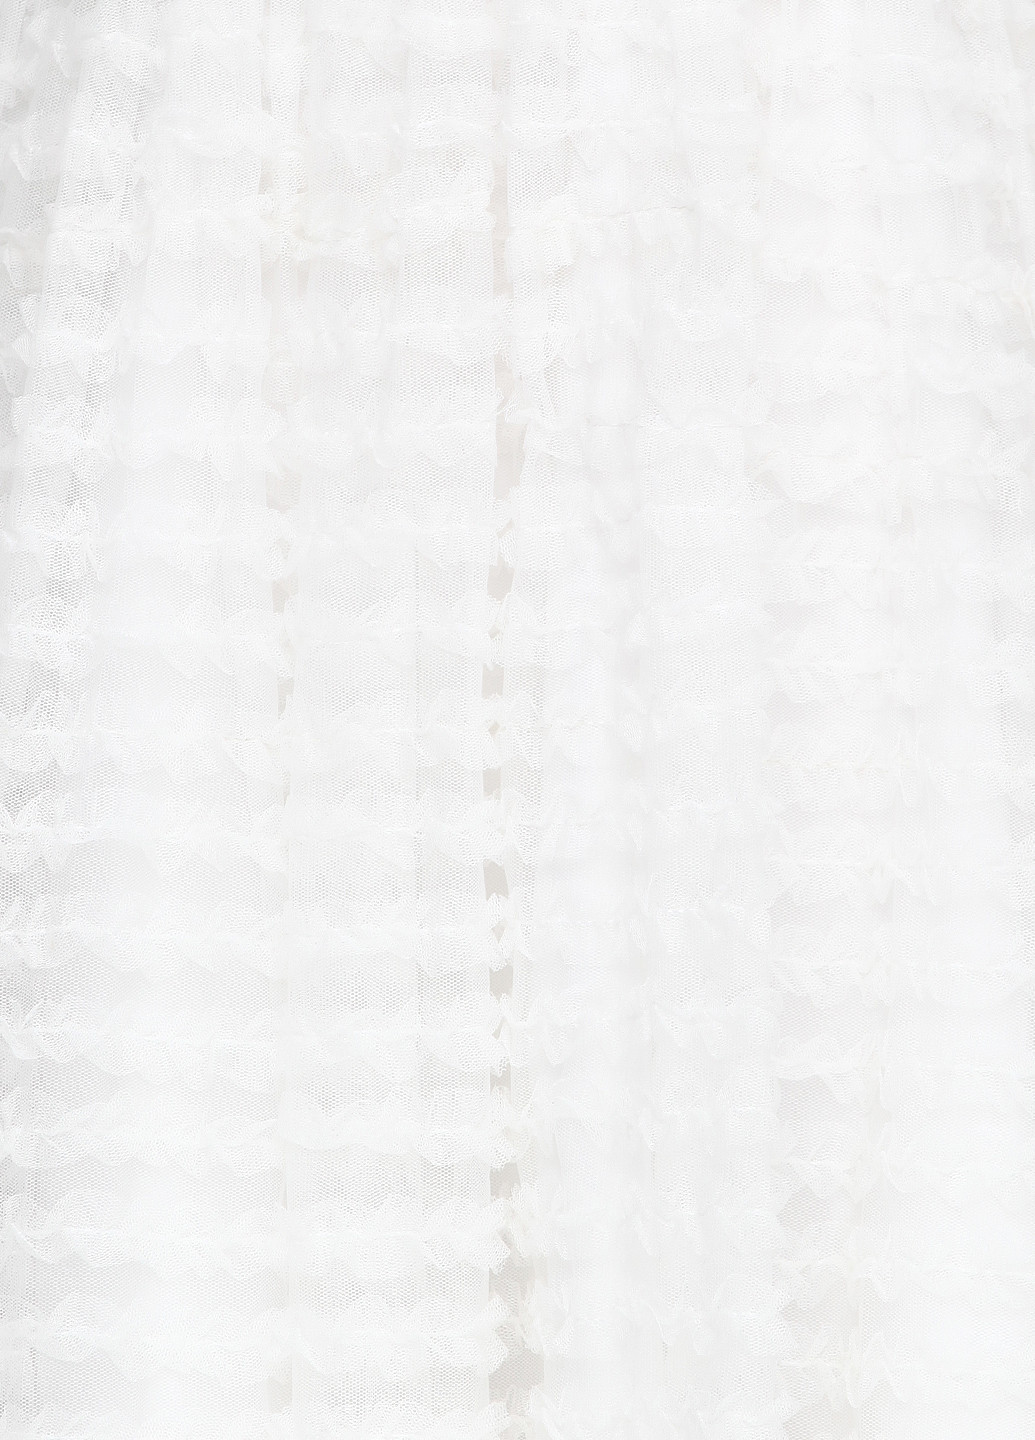 Белое вечернее платье Laona однотонное